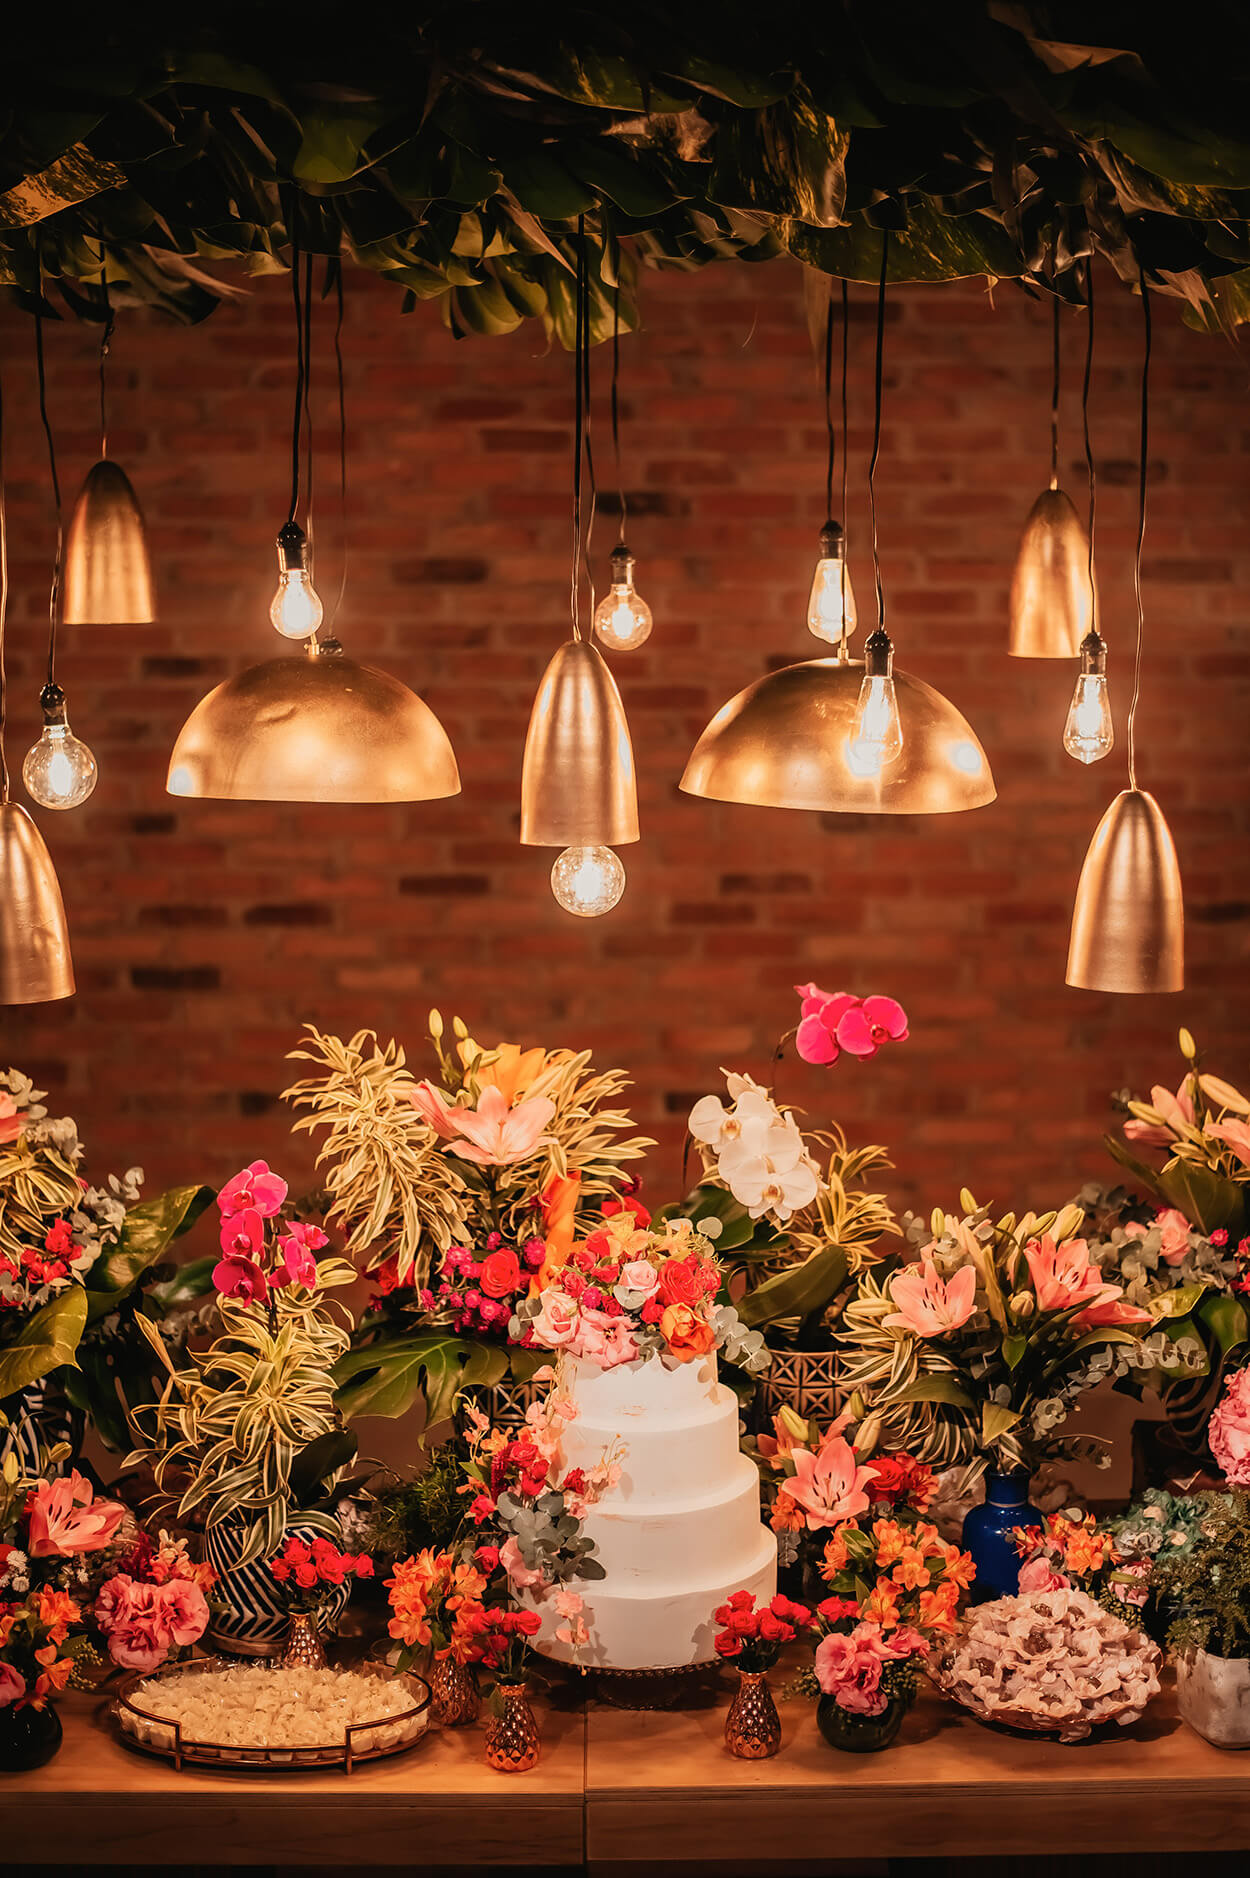 mesa de madeira com bolo de casamento com quatro andares com flores no topo e vasos com flores rosas ao lado